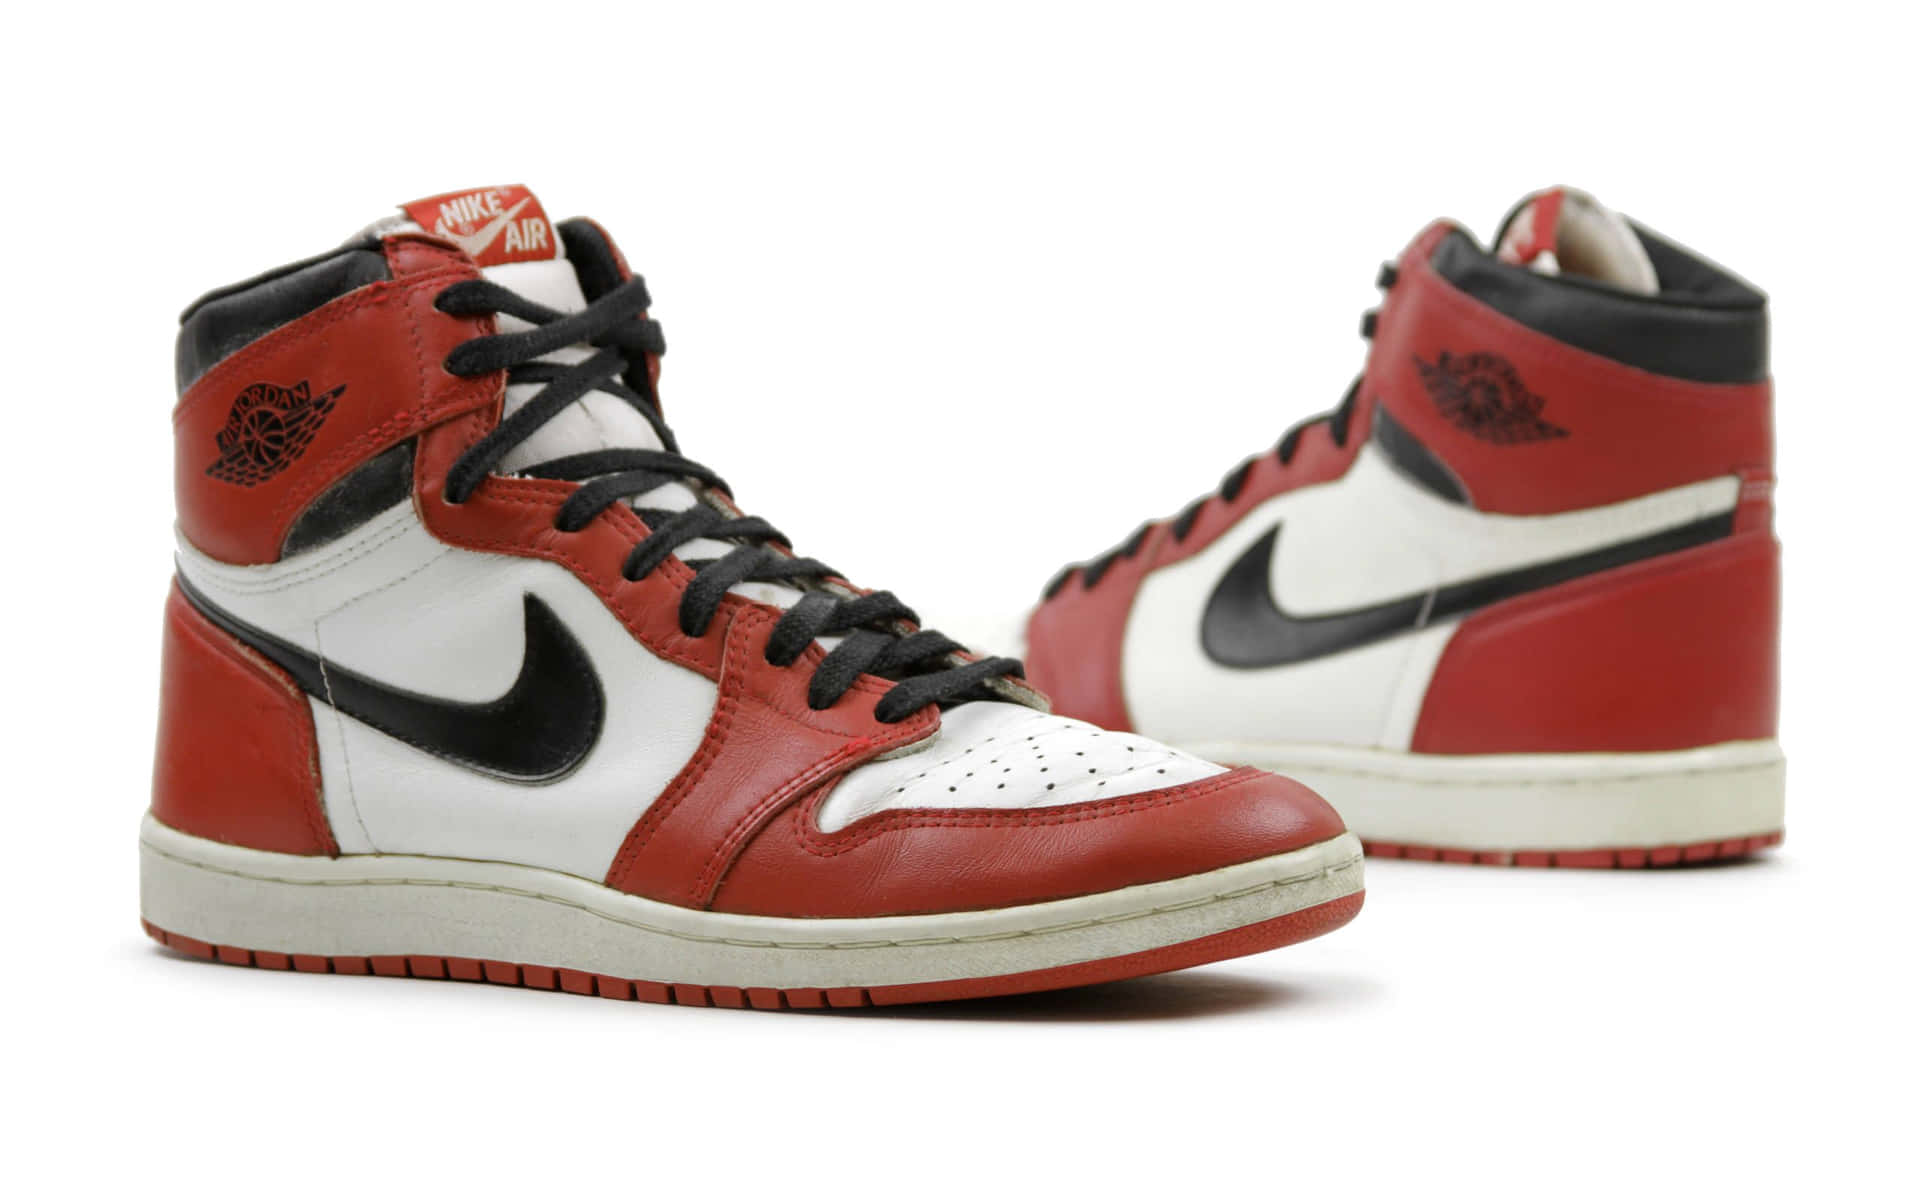 Consigueese Estilo Jumpman Con Estos Audaces Zapatos Rojos De Jordan Fondo de pantalla